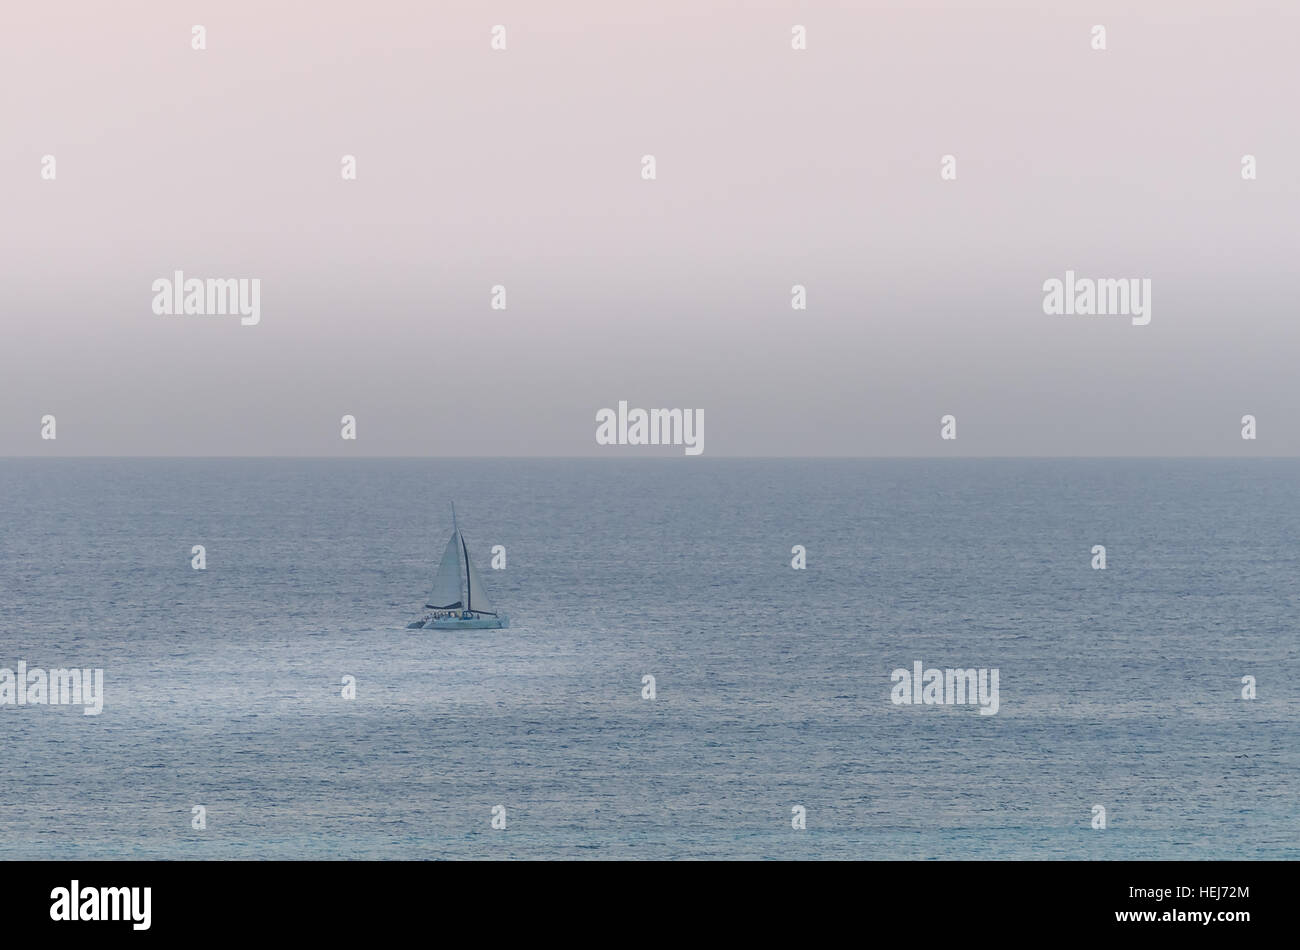 Barche a vela in mare la navigazione sotto il tramonto. L'immagine è stata presa da Palm Beach di Aruba, nel mar dei Caraibi. Foto Stock